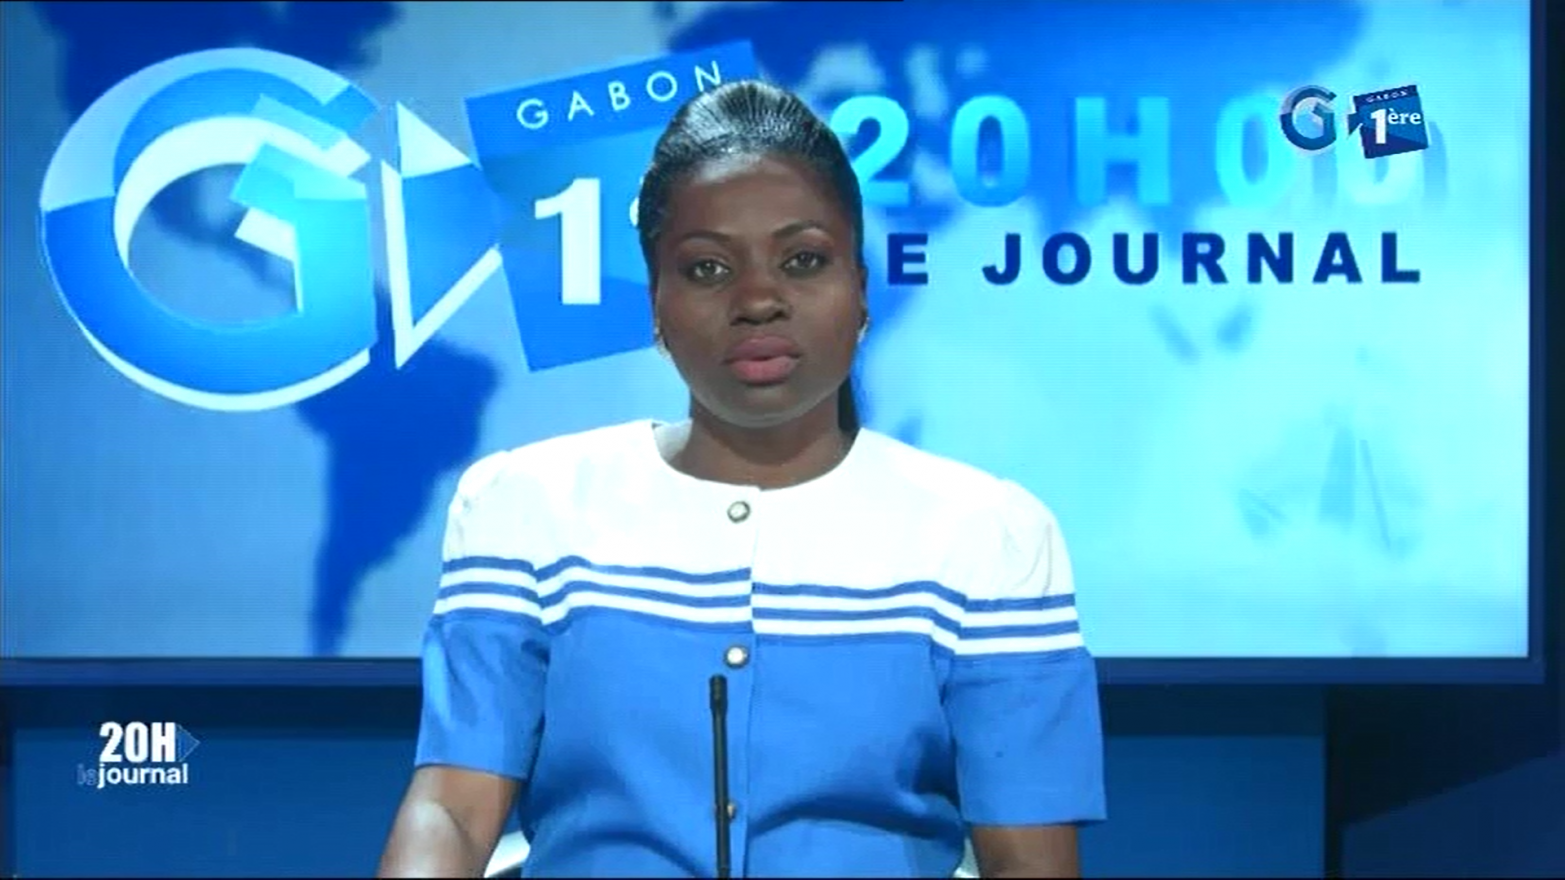 Journal télévisé de 20h de Gabon 1ère du 29 juillet 2019
